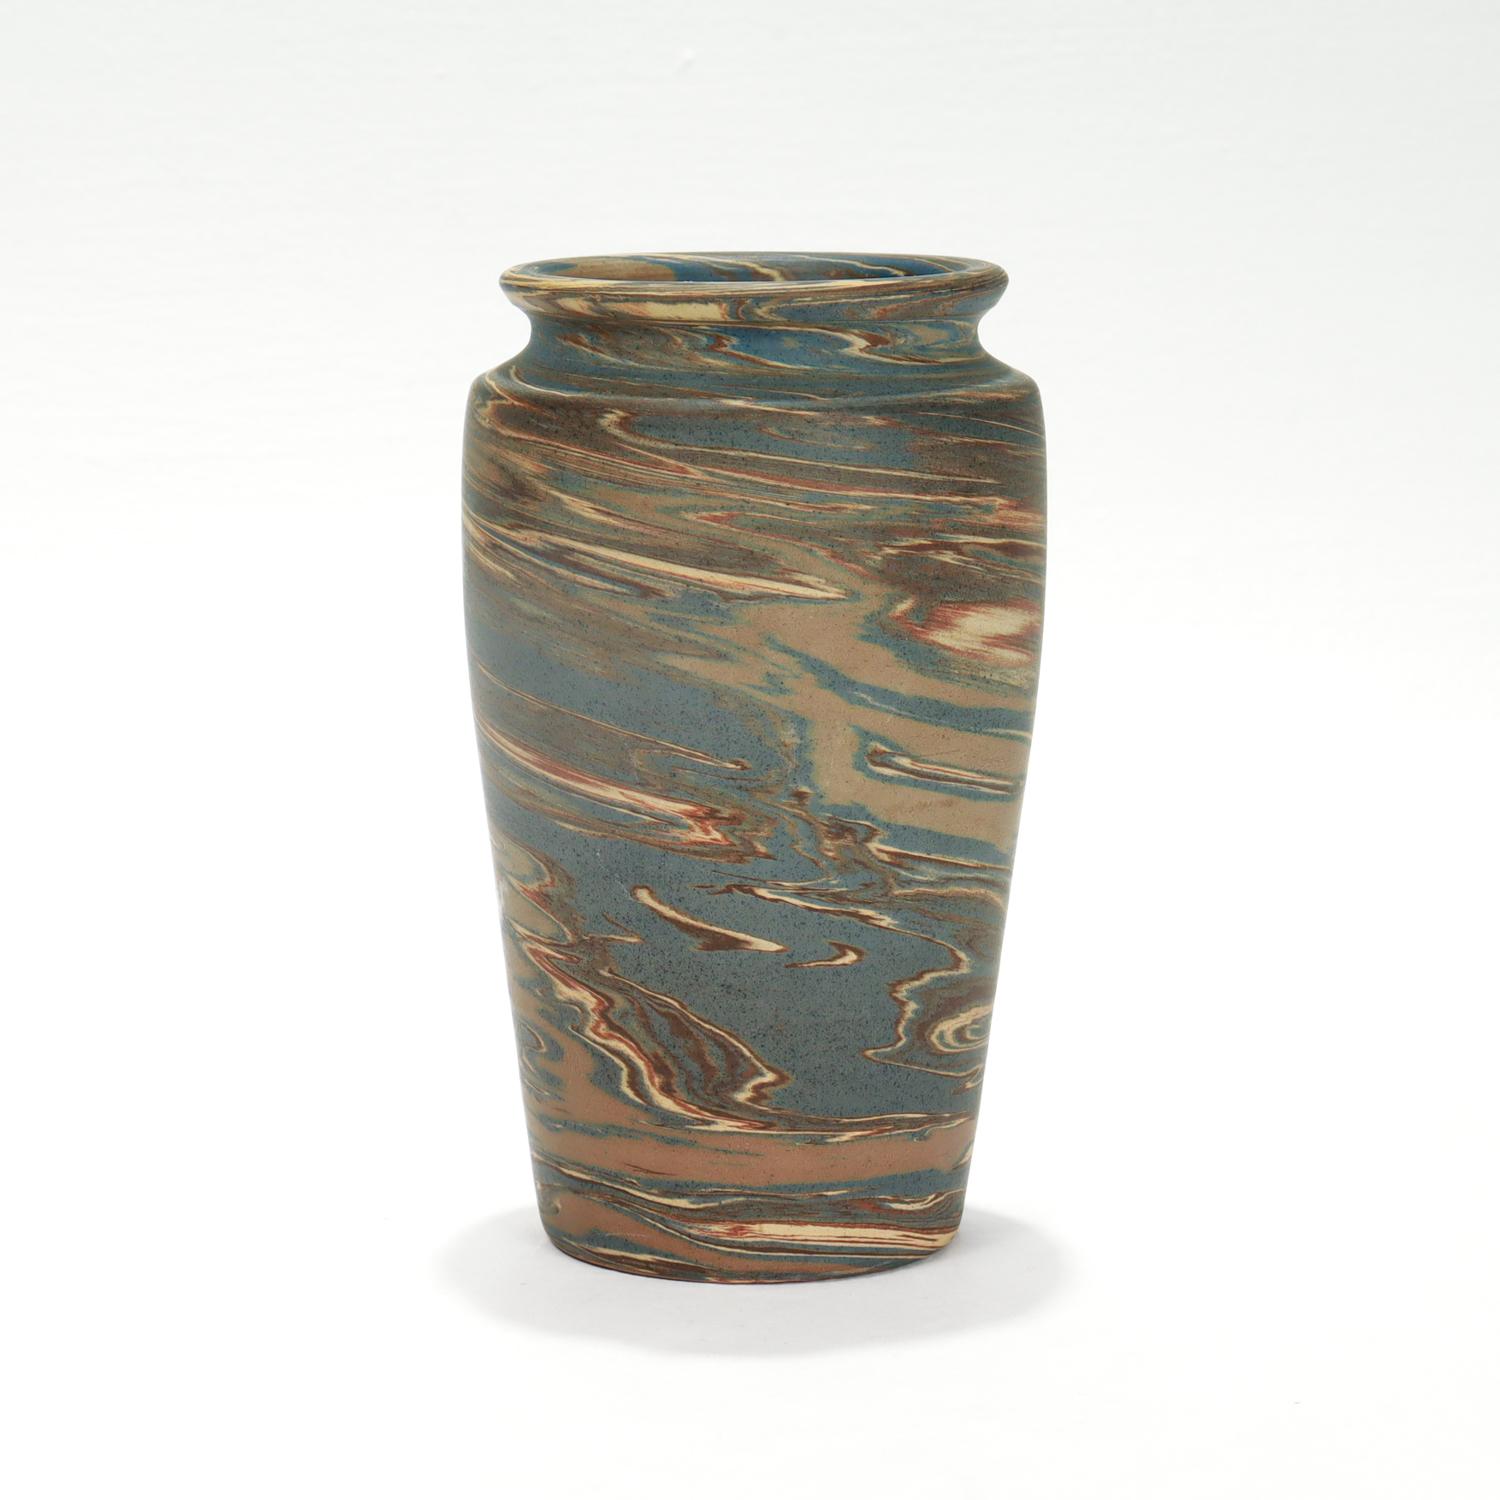 Eine schöne amerikanische Arts & Crafts-Keramik-Vase.

Von der Niloak Pottery Company aus Benton, Arkansas.

In ihrer marmorierten Mission Ware Linie.

Auf dem Sockel ist die Marke NILOAK eingeprägt.

Einfach eine wunderbare Art Pottery